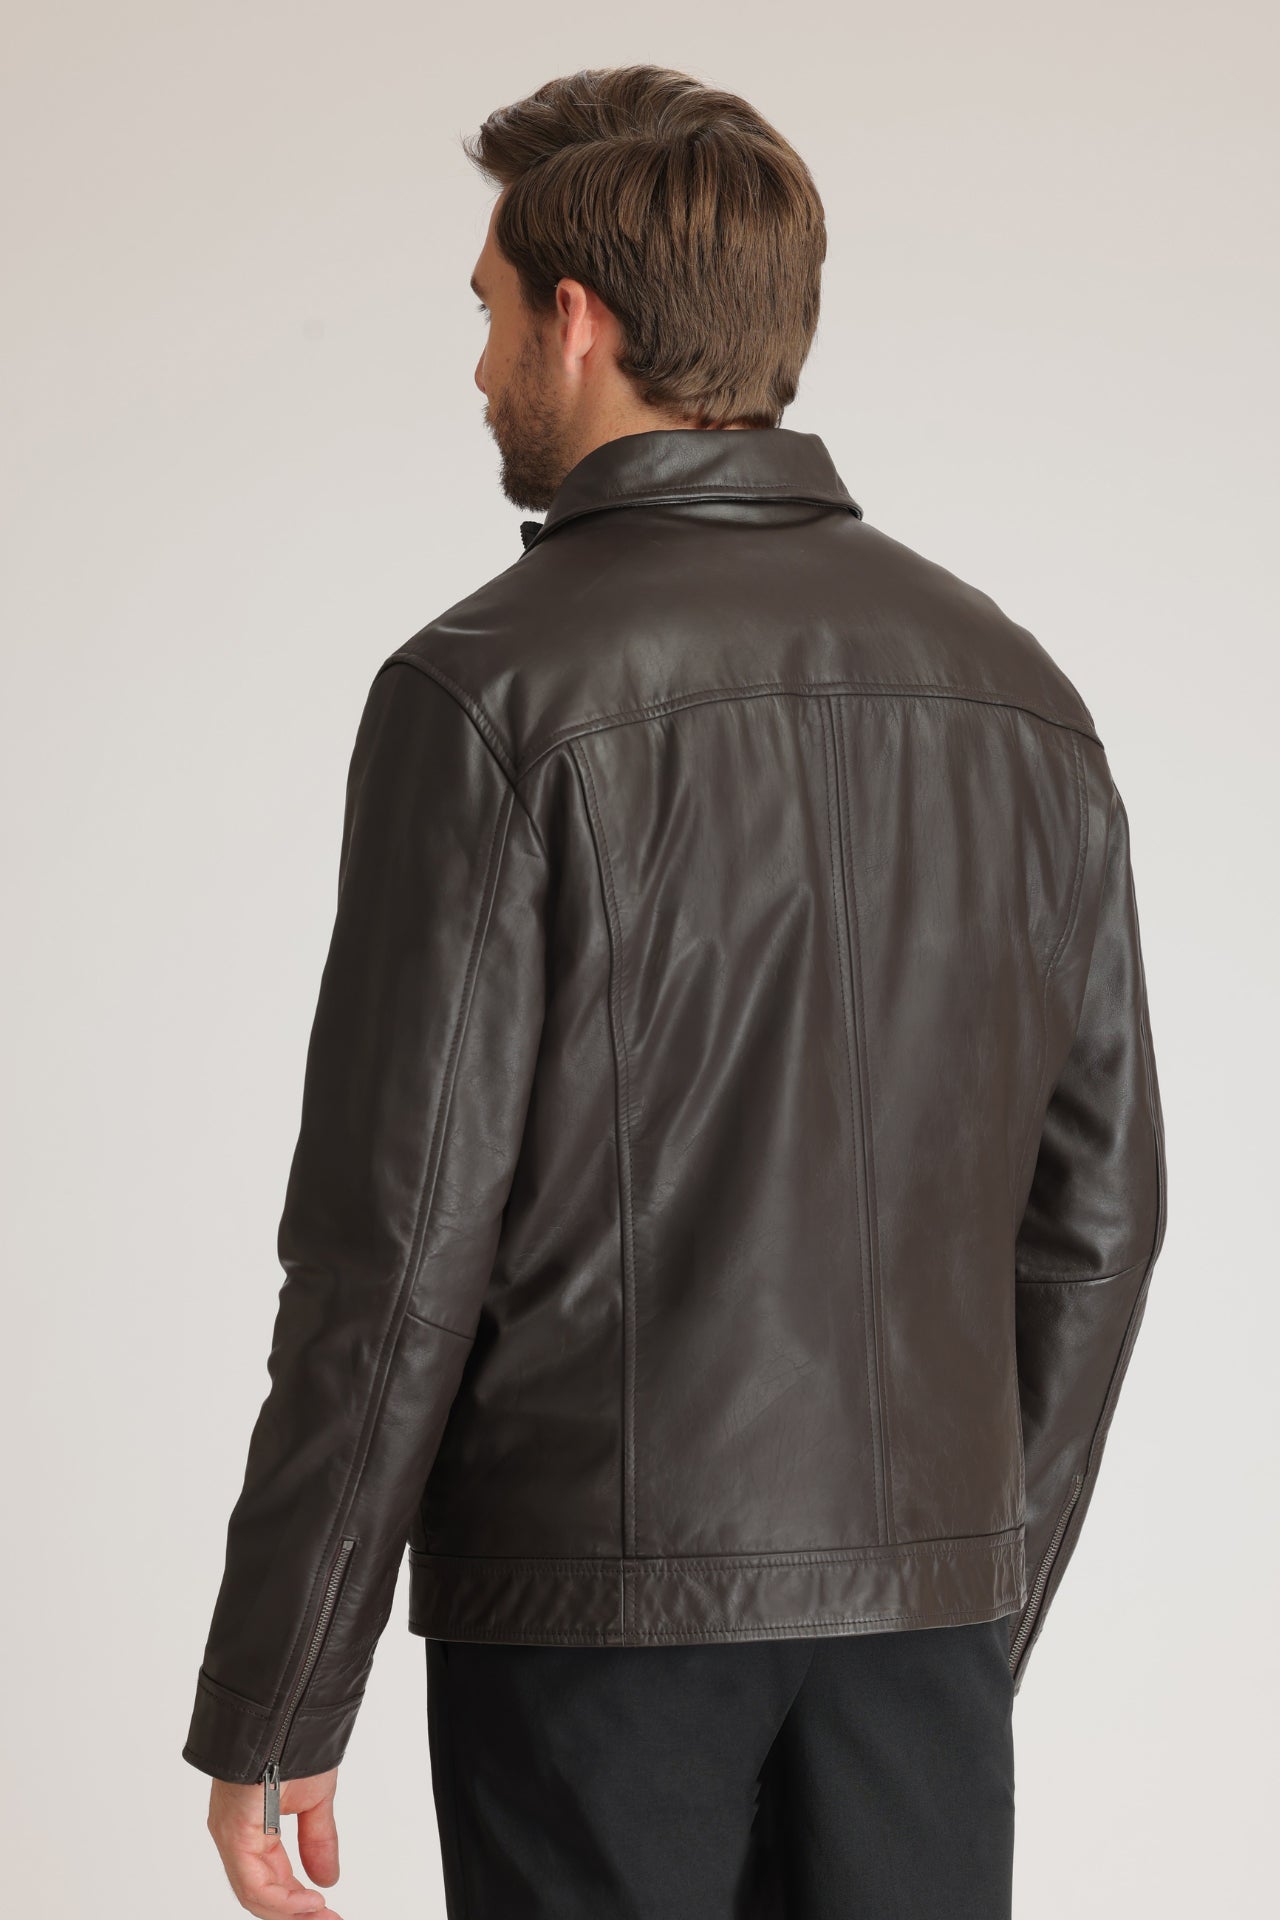 LYNDEN - Men Leather Jacket – Danier